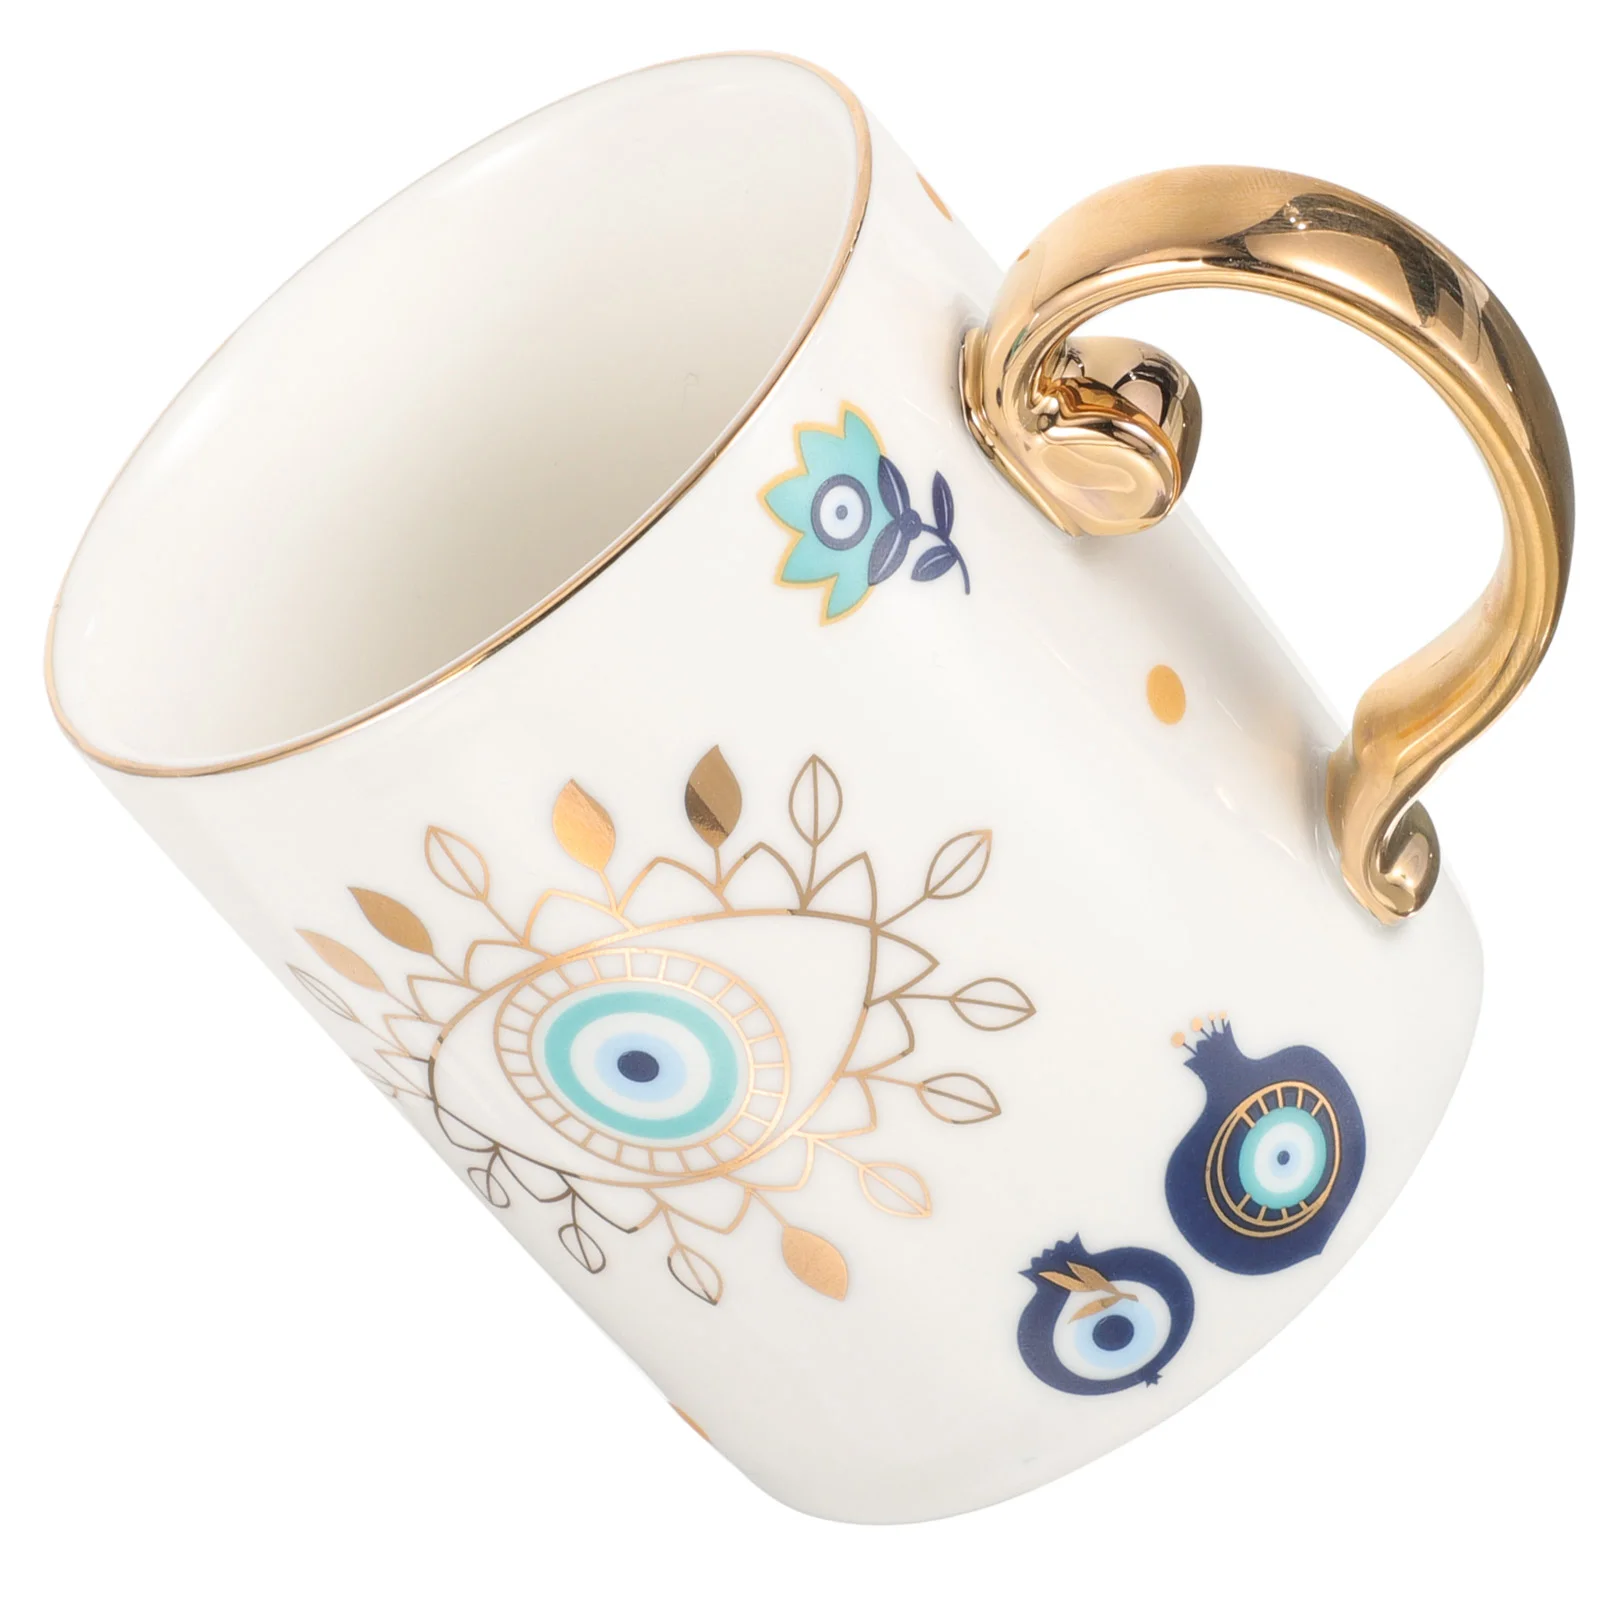 

Кофейная кружка в стиле ретро, декоративная искусственная кожа, персонализированная керамическая кружка с глазами в винтажном стиле